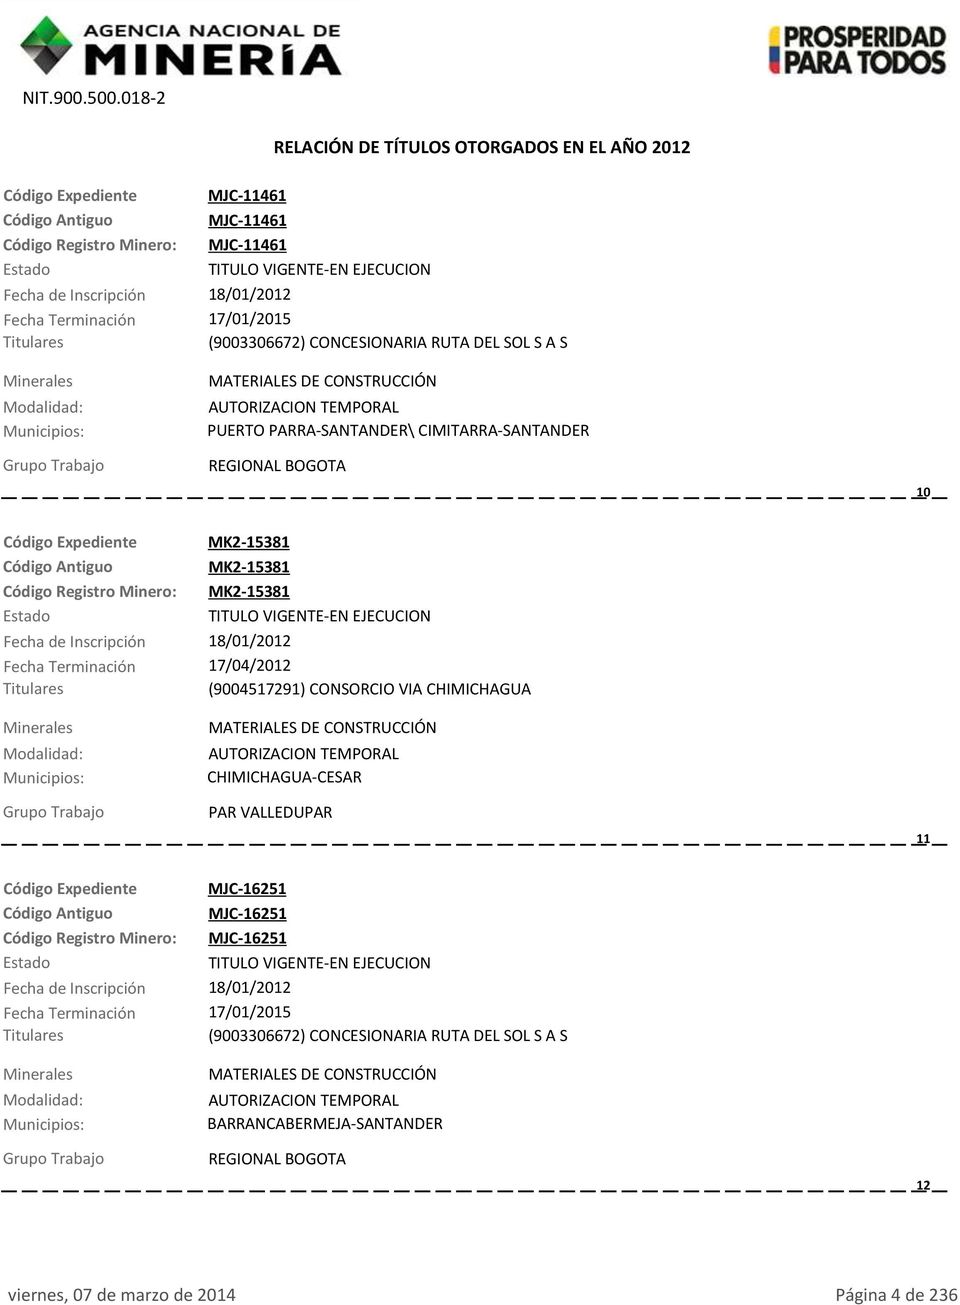 Terminación 17/04/2012 (9004517291) CONSORCIO VIA CHIMICHAGUA CHIMICHAGUA-CESAR PAR VALLEDUPAR 11 Código Expediente MJC-16251 MJC-16251 Código Registro Minero: MJC-16251 Fecha de